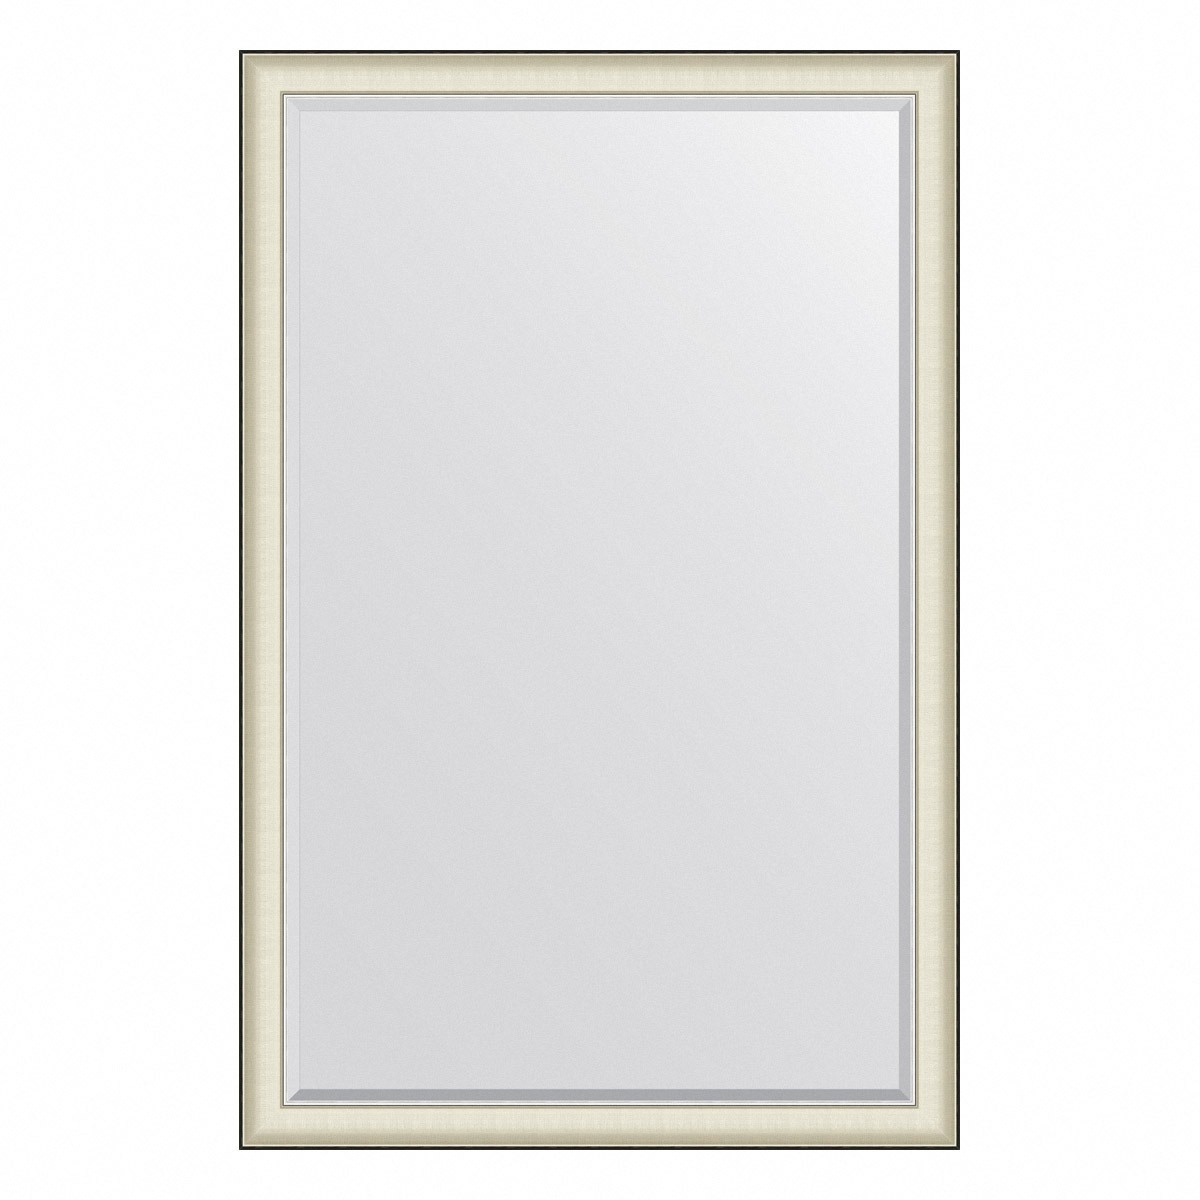 Зеркало с фацетом в багетной раме Evoform белая кожа с хромом 78 мм 114х174 см зеркало evoform в багетной раме с фацетом 78 мм 114х174 см цвет белая кожа с хромом